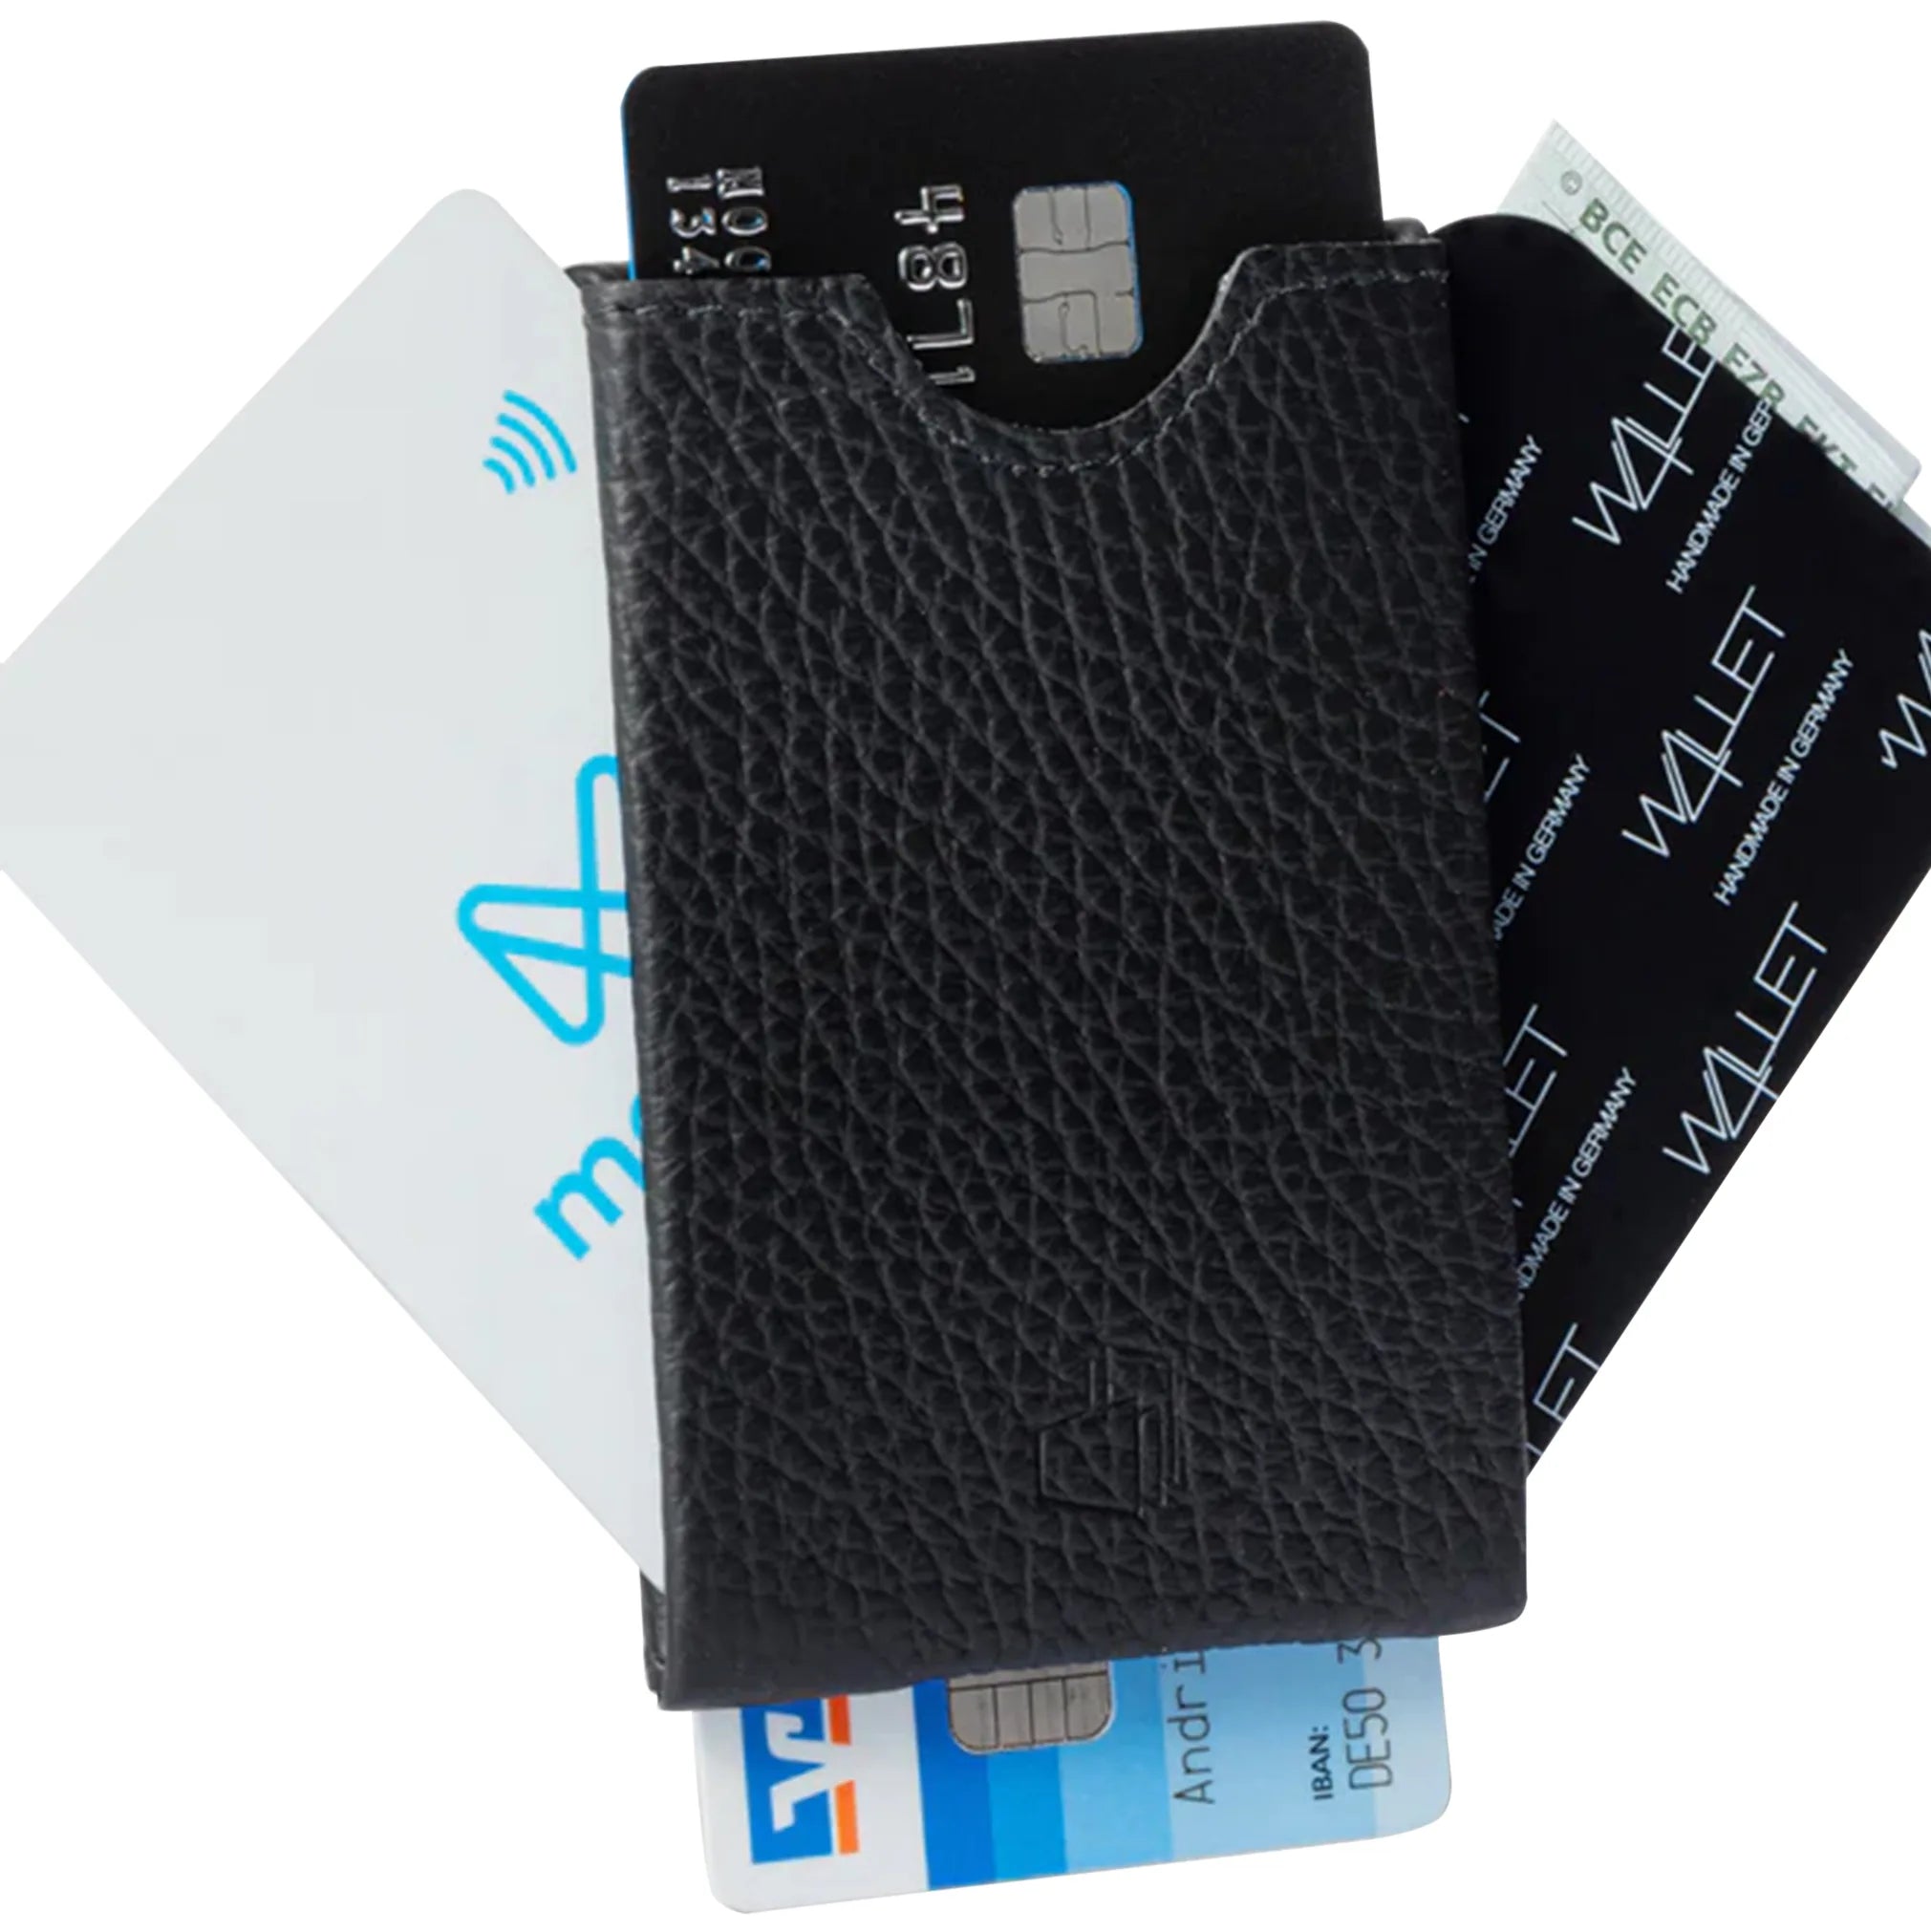 W4llet structured leather credit card holder 9 cm - Caramel